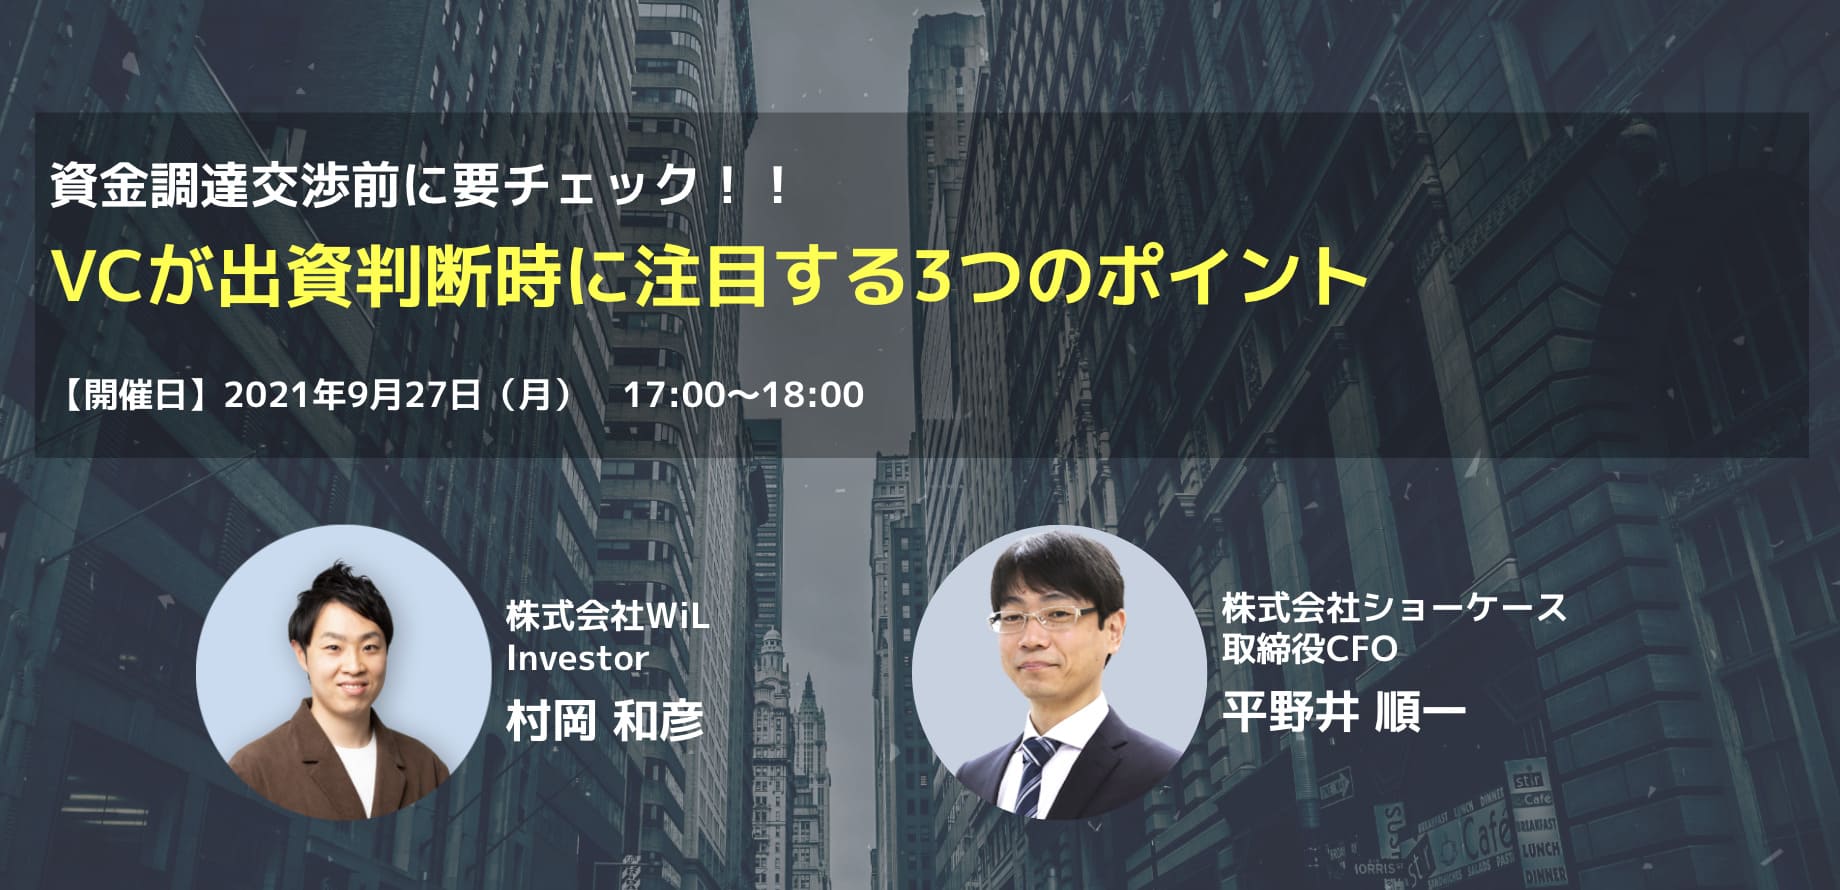 株式会社WiLのInvestor：村岡氏をお迎えした、資金調達検討中のスタートアップを対象にしたオンライン座談会！